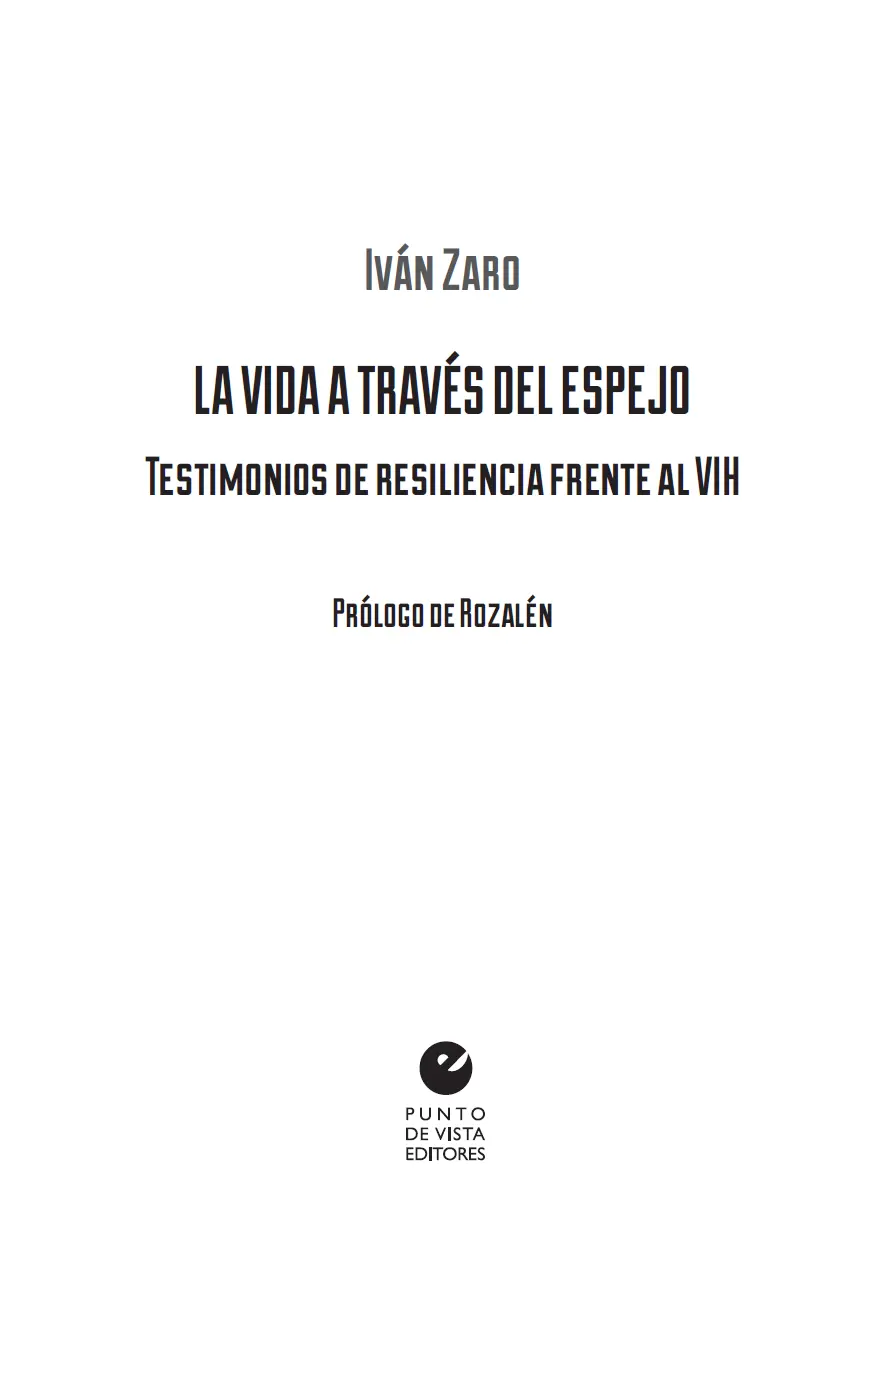 Iván Zaro 2019 Prólogo de Rozalén 2019 De esta edición Punto de Vista - фото 2